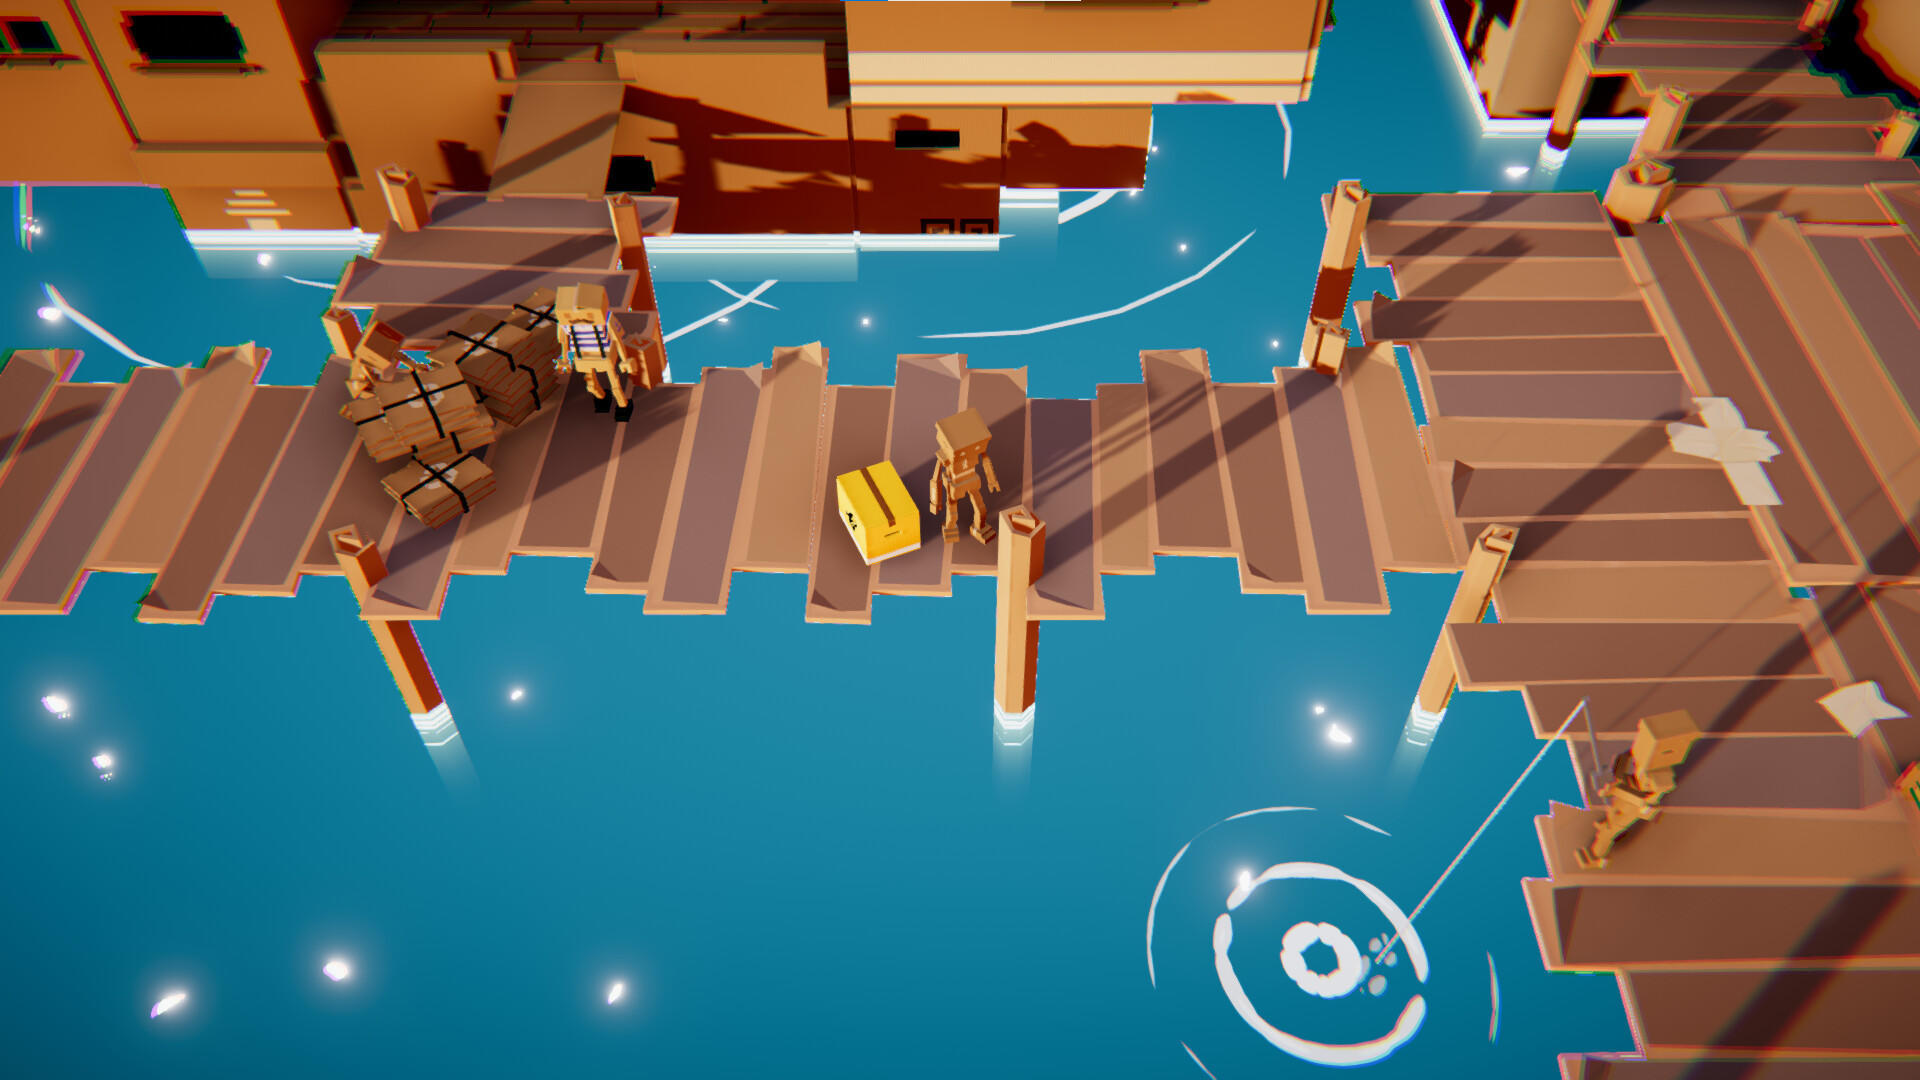 The Mystery of the Cardboard Island screenshot game